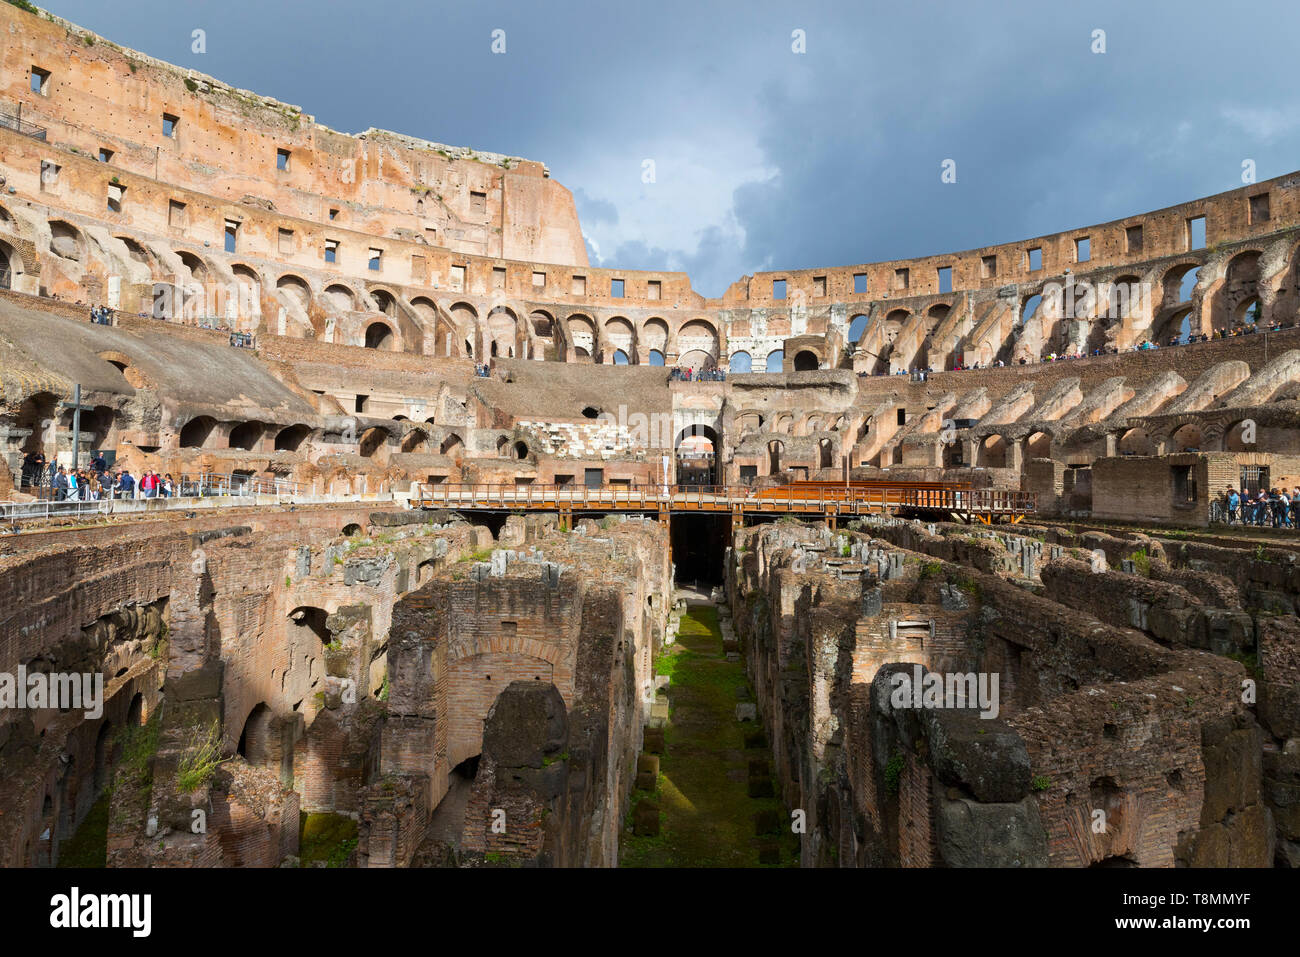 Italia, Roma: vestigios romanos del Coliseo (o Coliseo), el Coliseo, el sitio turístico registrado como un sitio del Patrimonio Mundial de la UNESCO Foto de stock